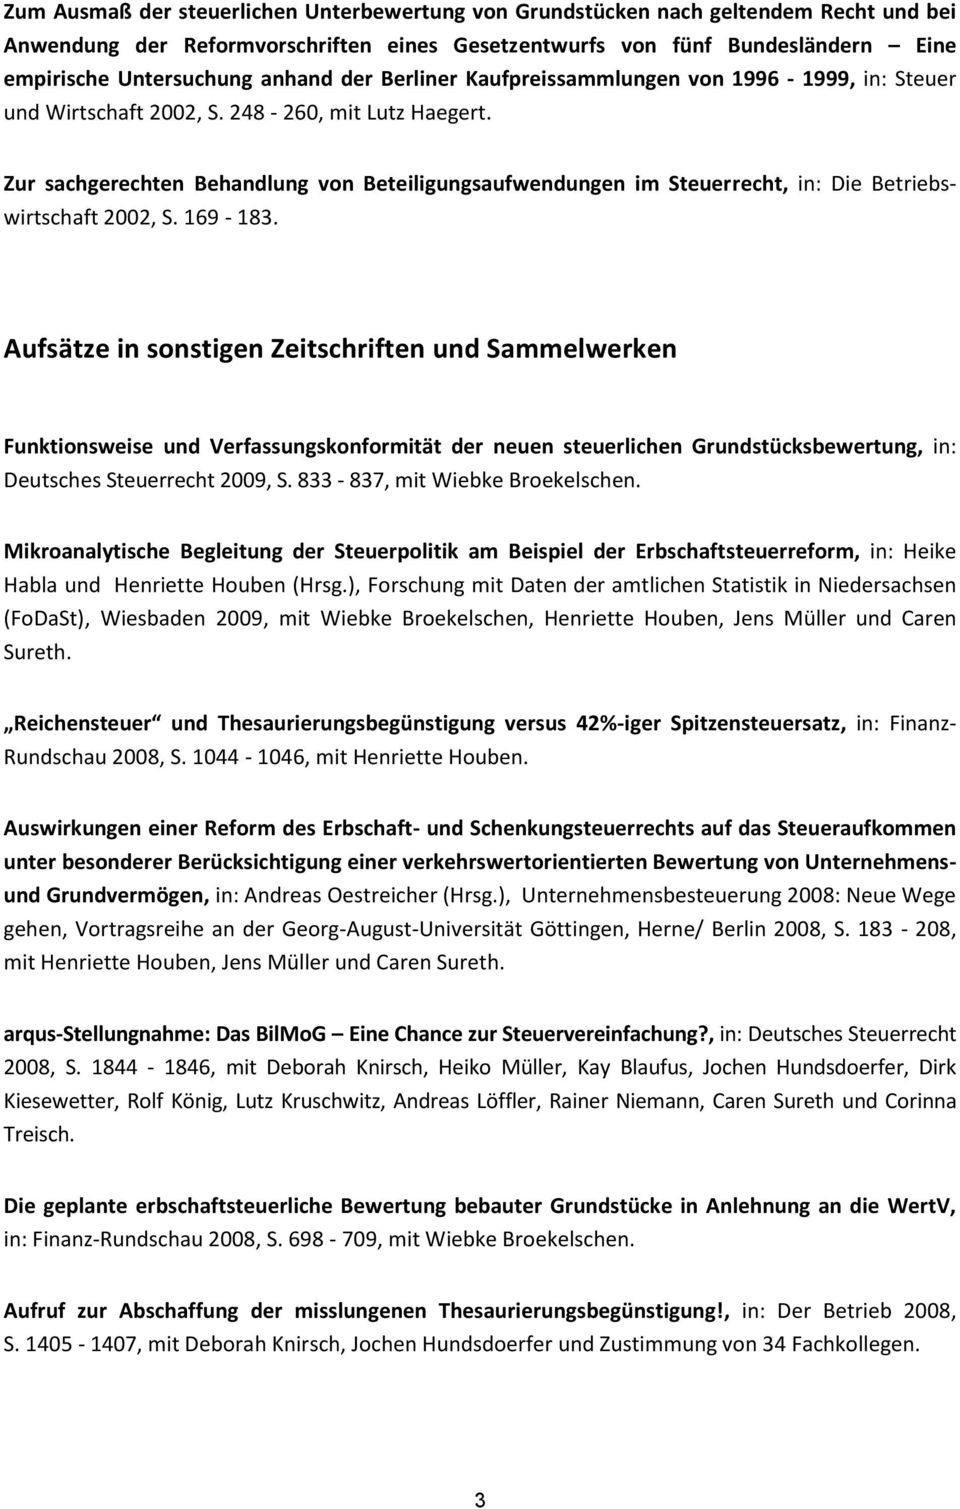 Zur sachgerechten Behandlung von Beteiligungsaufwendungen im Steuerrecht, in: Die Betriebswirtschaft 2002, S. 169-183.